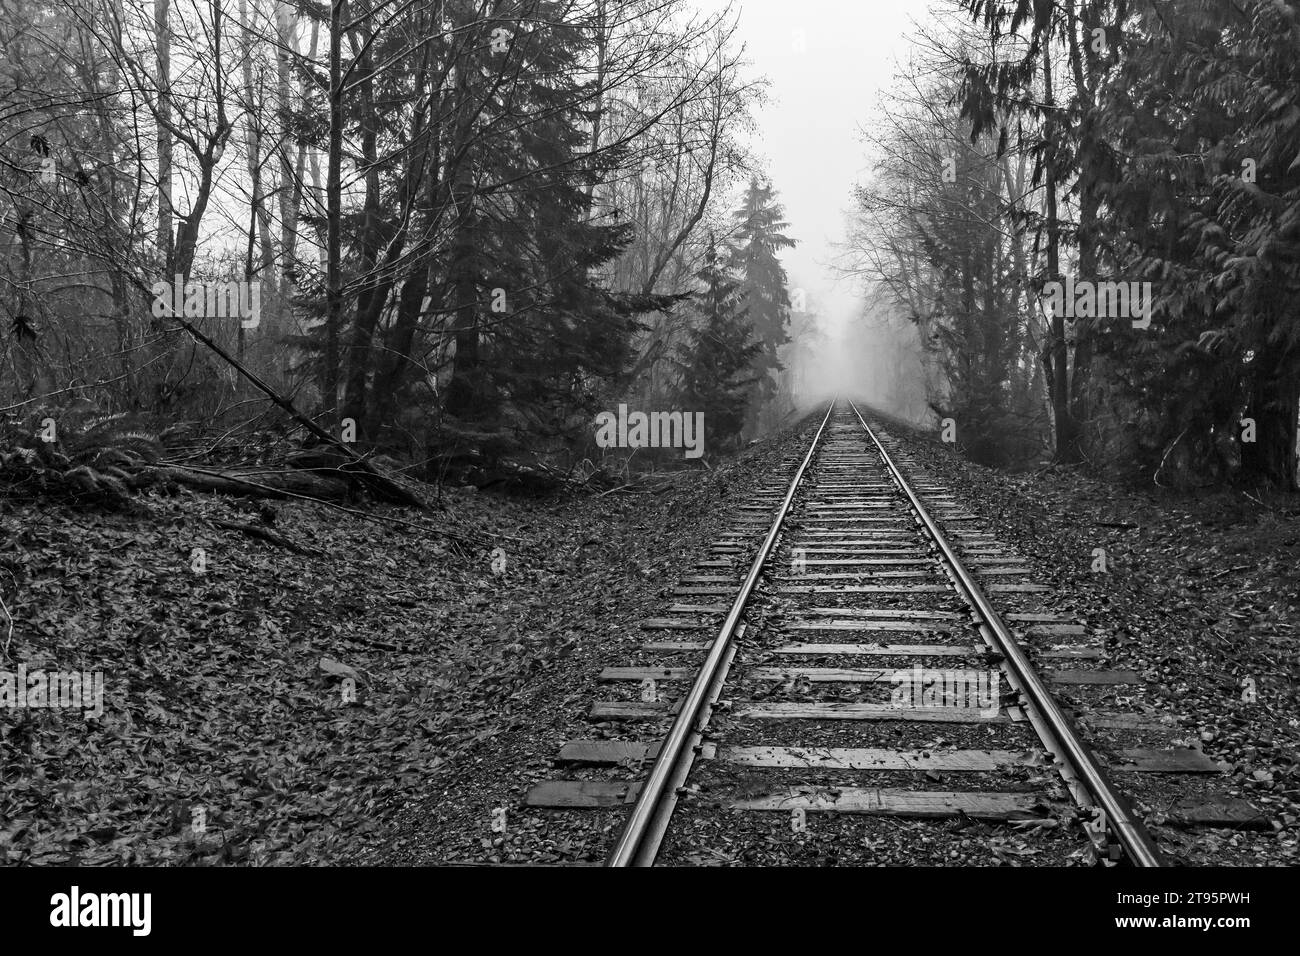 Tracks of the Puget Sound & Pacific Railroad in der Nähe von Shelton, Olympic Peninsula, WA, USA [keine Veröffentlichung des Eigentums; nur redaktionelle Lizenzierung] Stockfoto